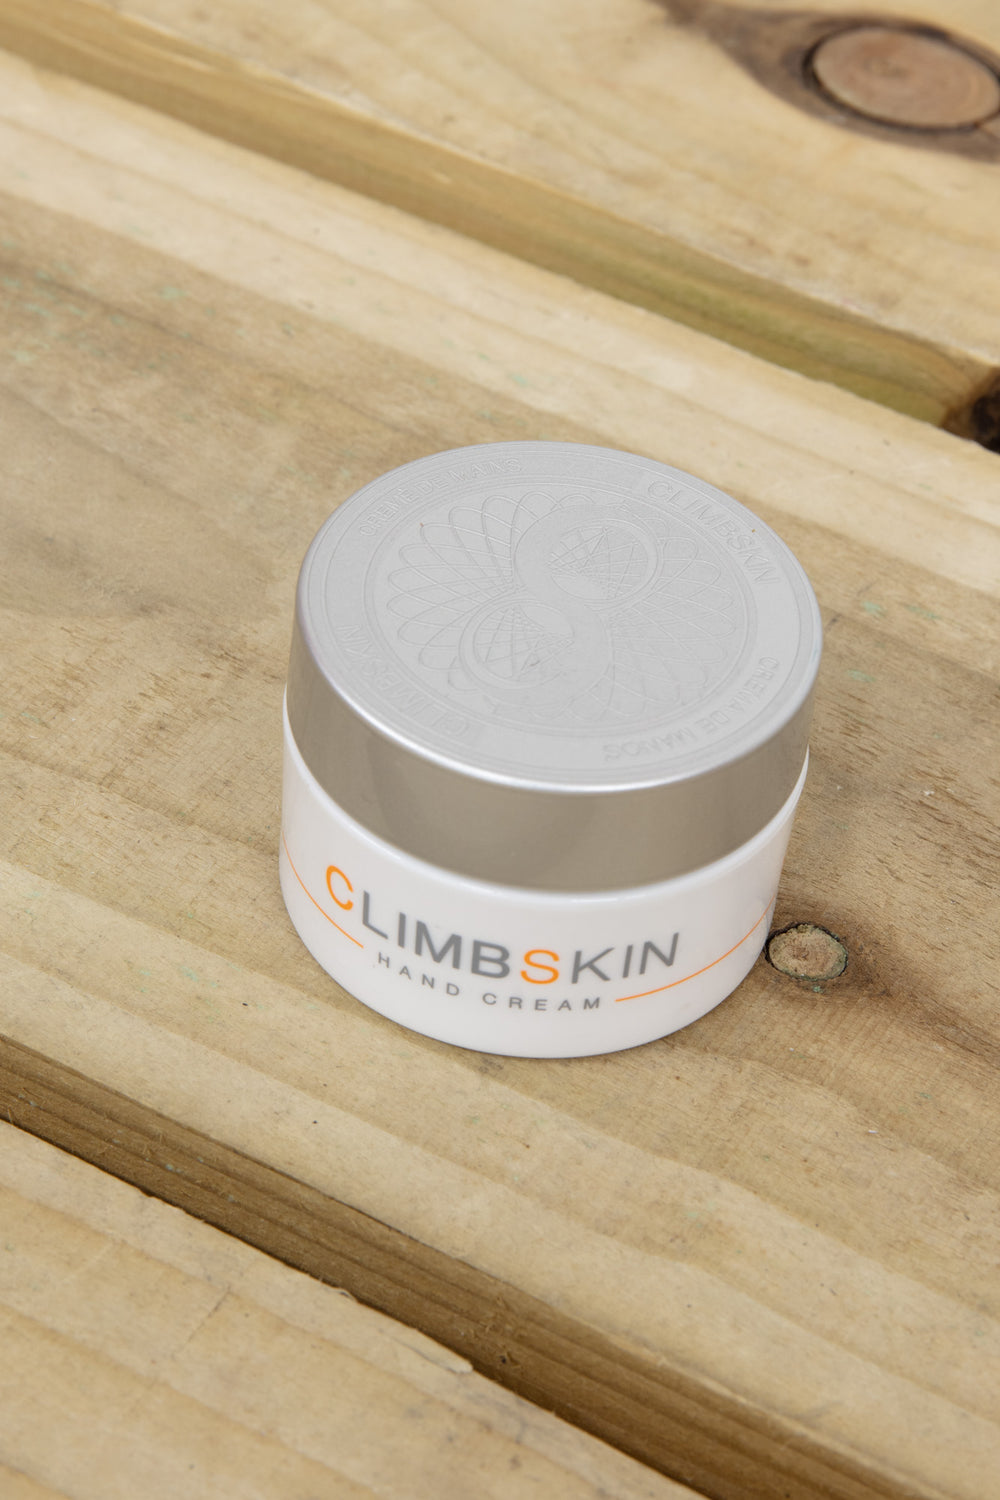 ClimbSkin - Hand Cream Tub